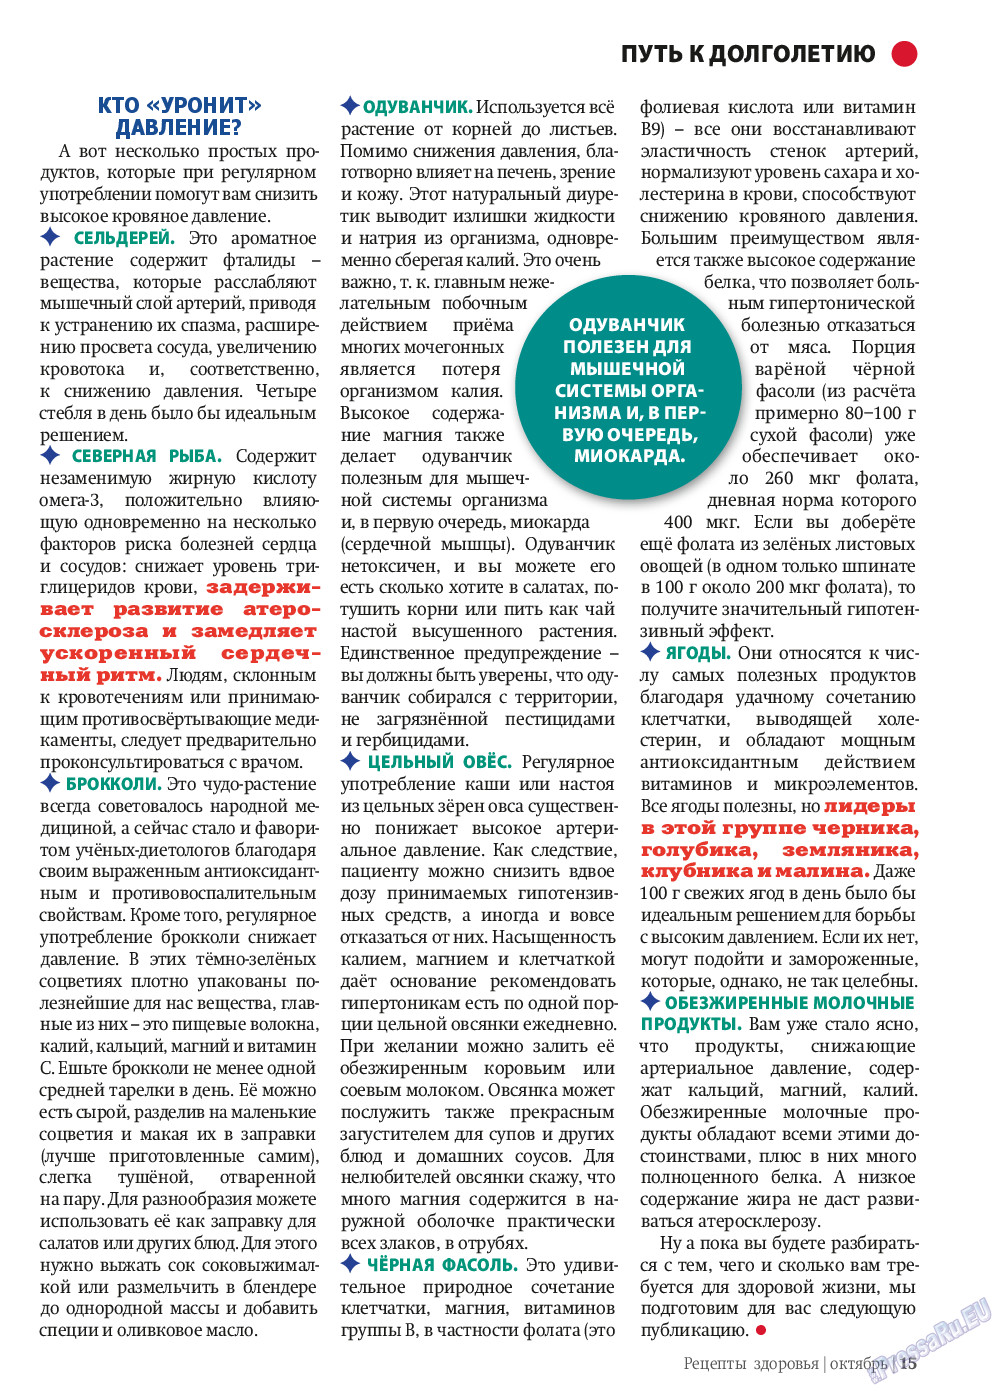 Рецепты здоровья, журнал. 2013 №10 стр.15